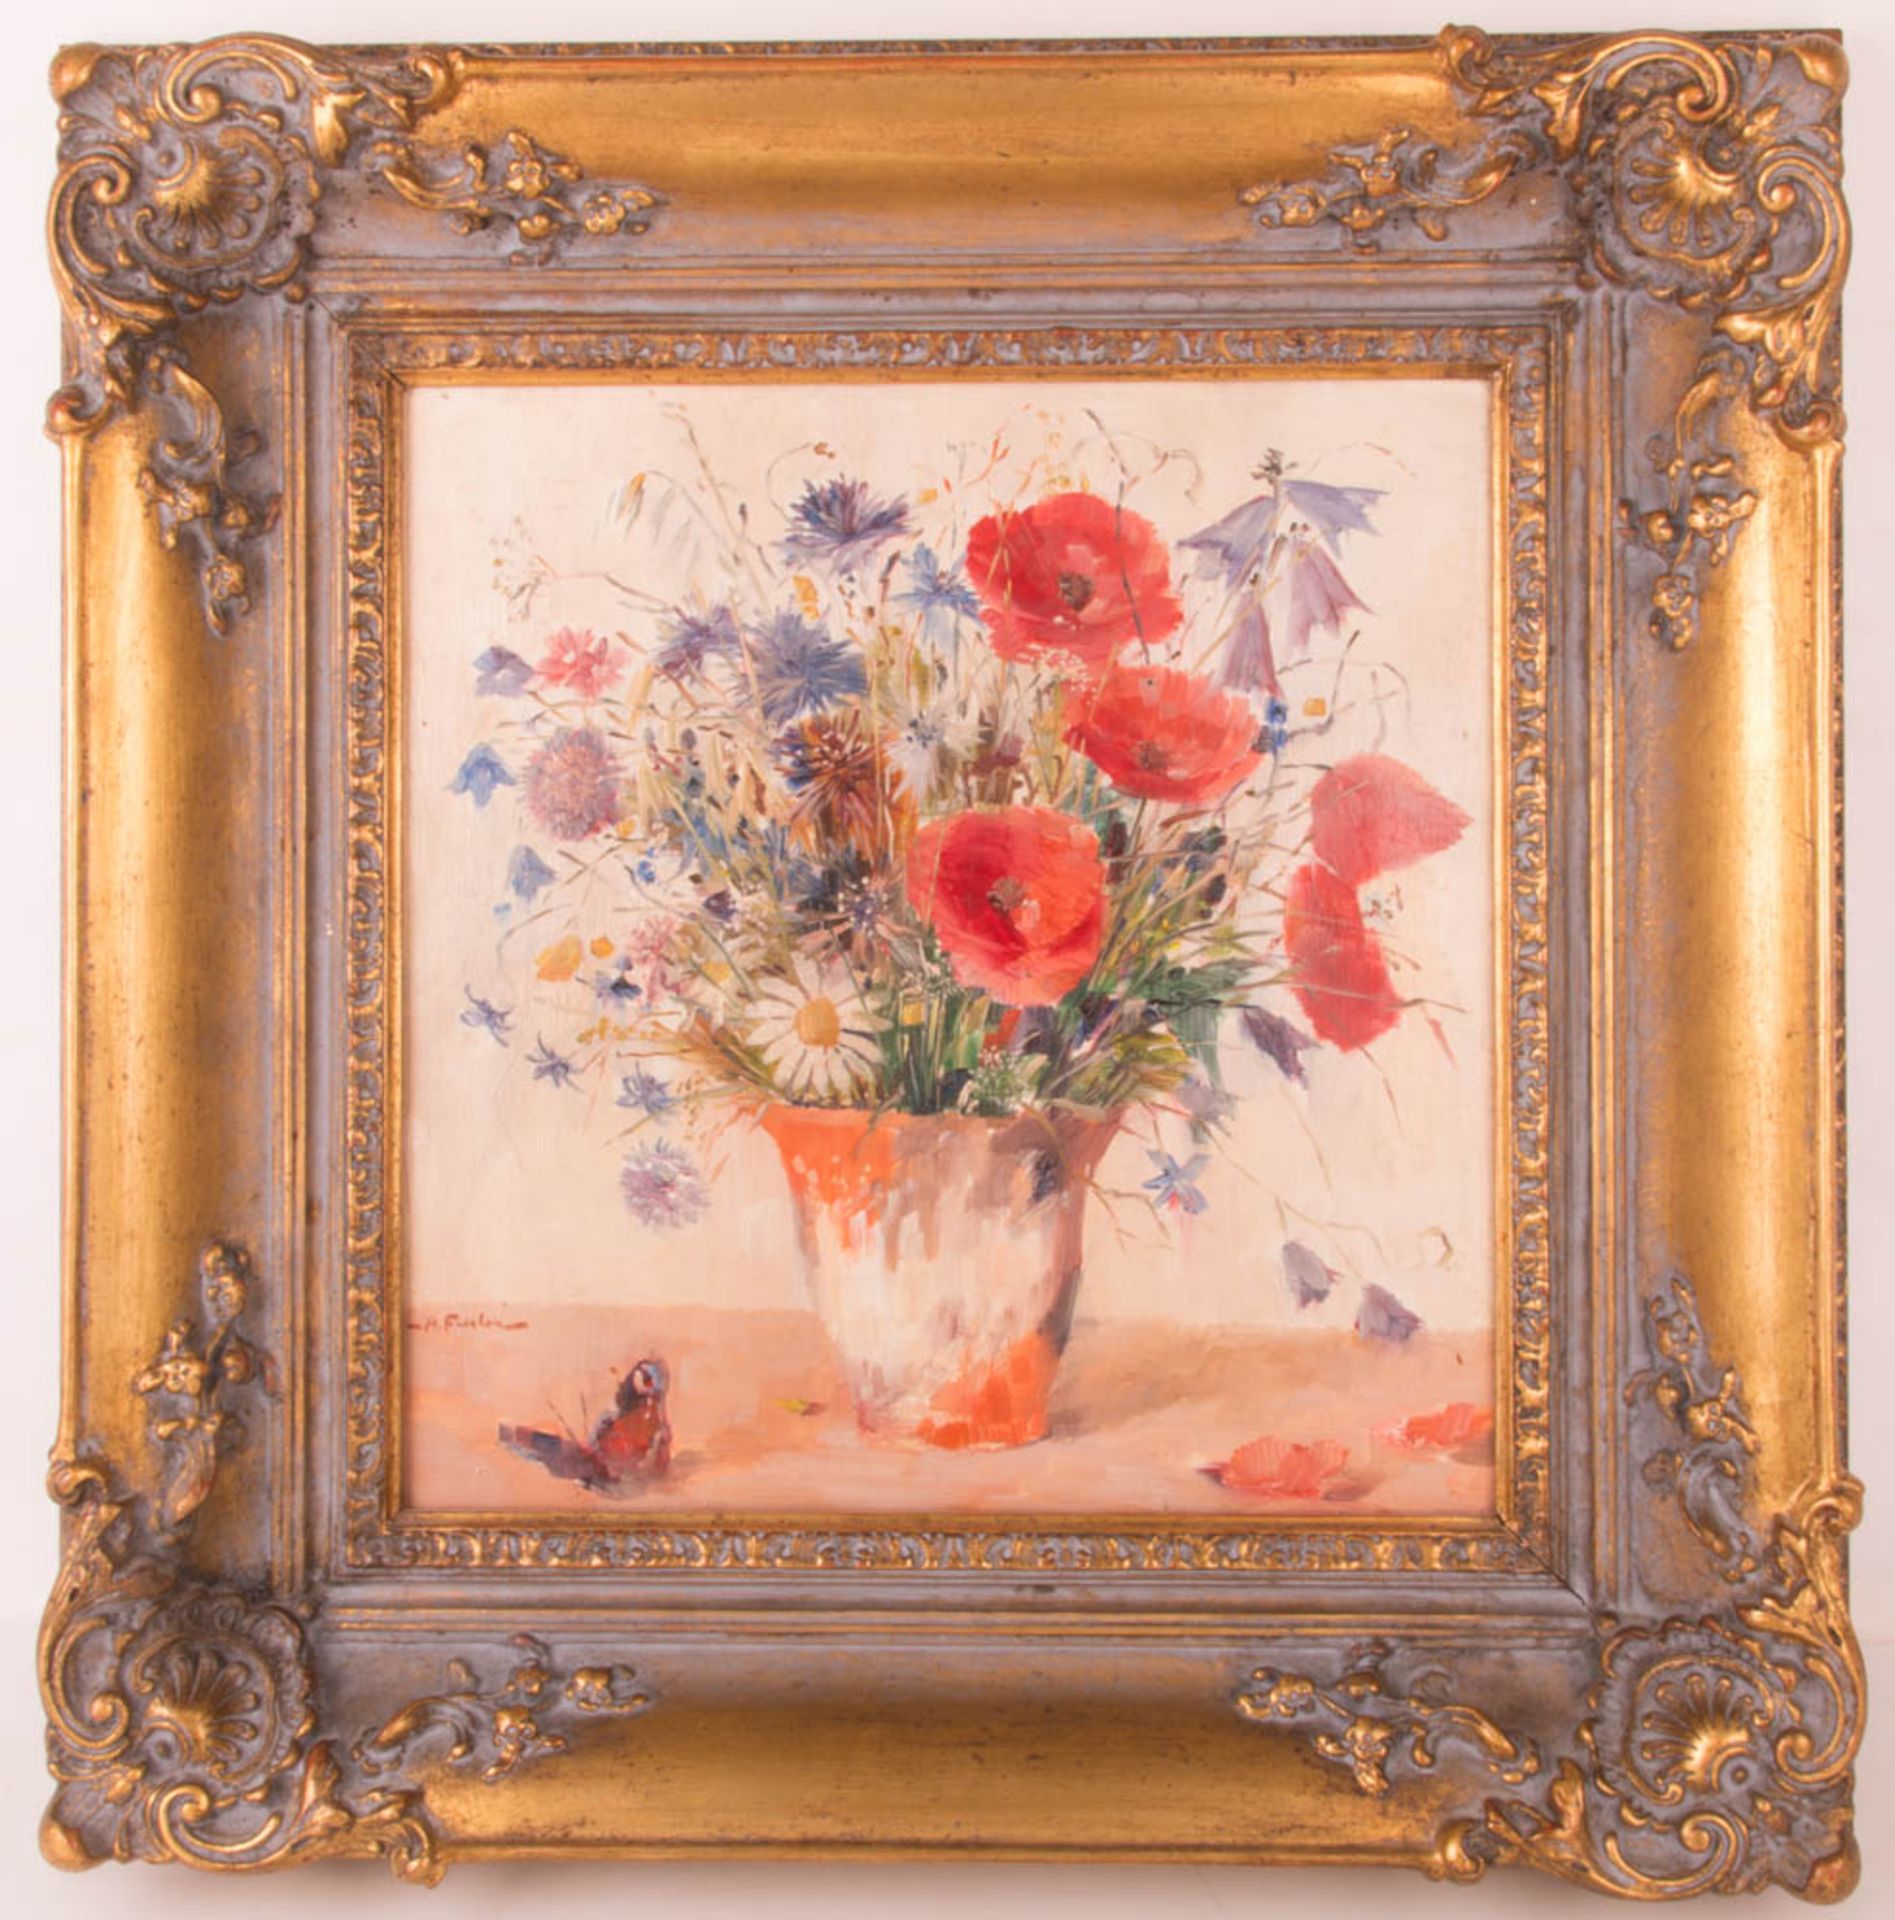 Unbekannt, Neoimpressionistisches Blumenstillleben, Öl auf Leinwand, 20. Jhd.